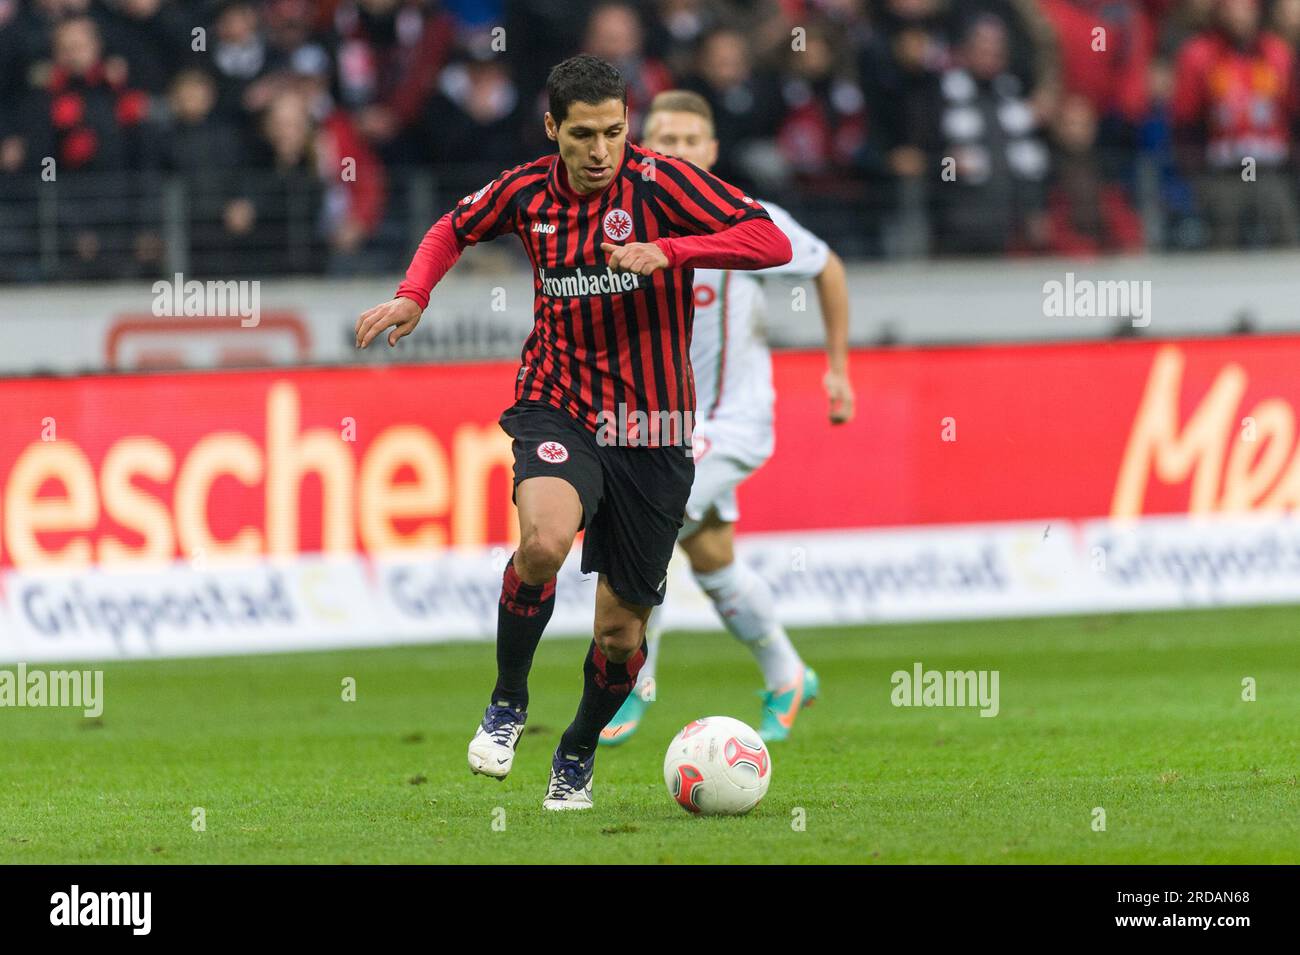 Karim Matmour (21) Aktion, action, Fußball Bundesliga Eintracht Frankfurt - FC Augsburg 4:2 in Frankfurt, Deutschland am 17.11.2012 Stock Photo